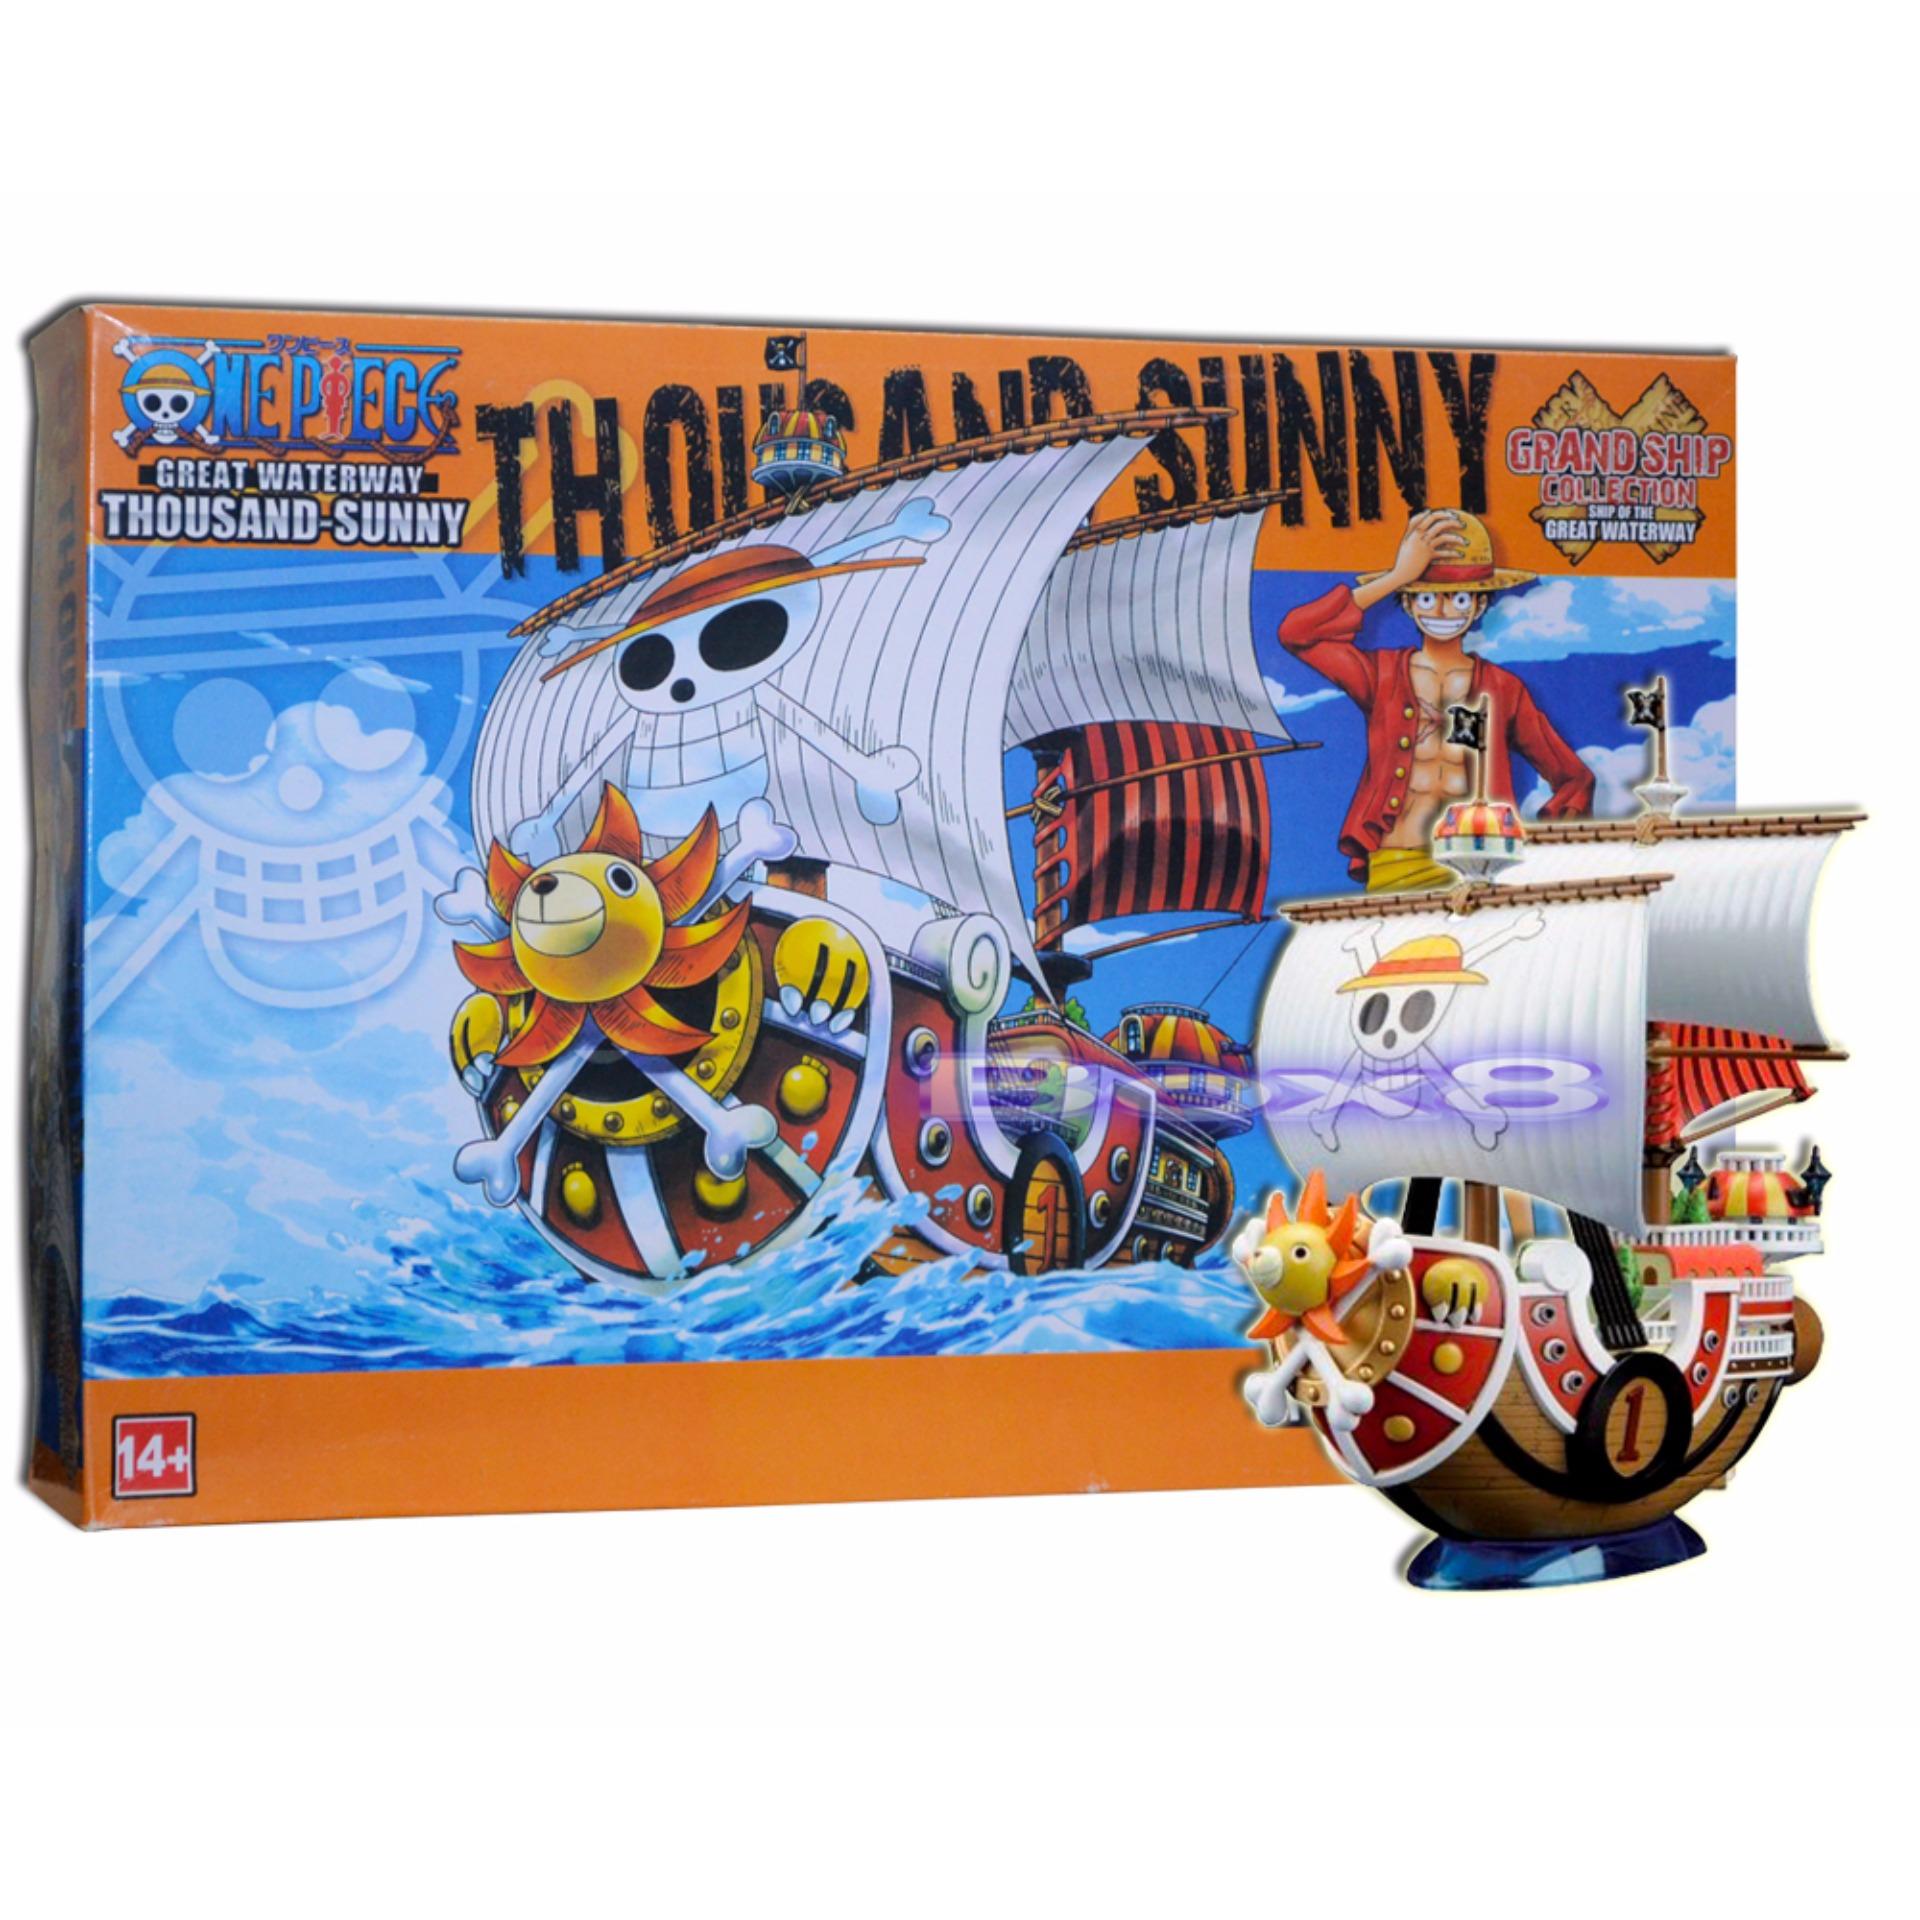 Mô Hình Thuyền Thousand Sunny One Piece  ĐÃ LẮP RÁP Giá Tốt   BBCosplaycom